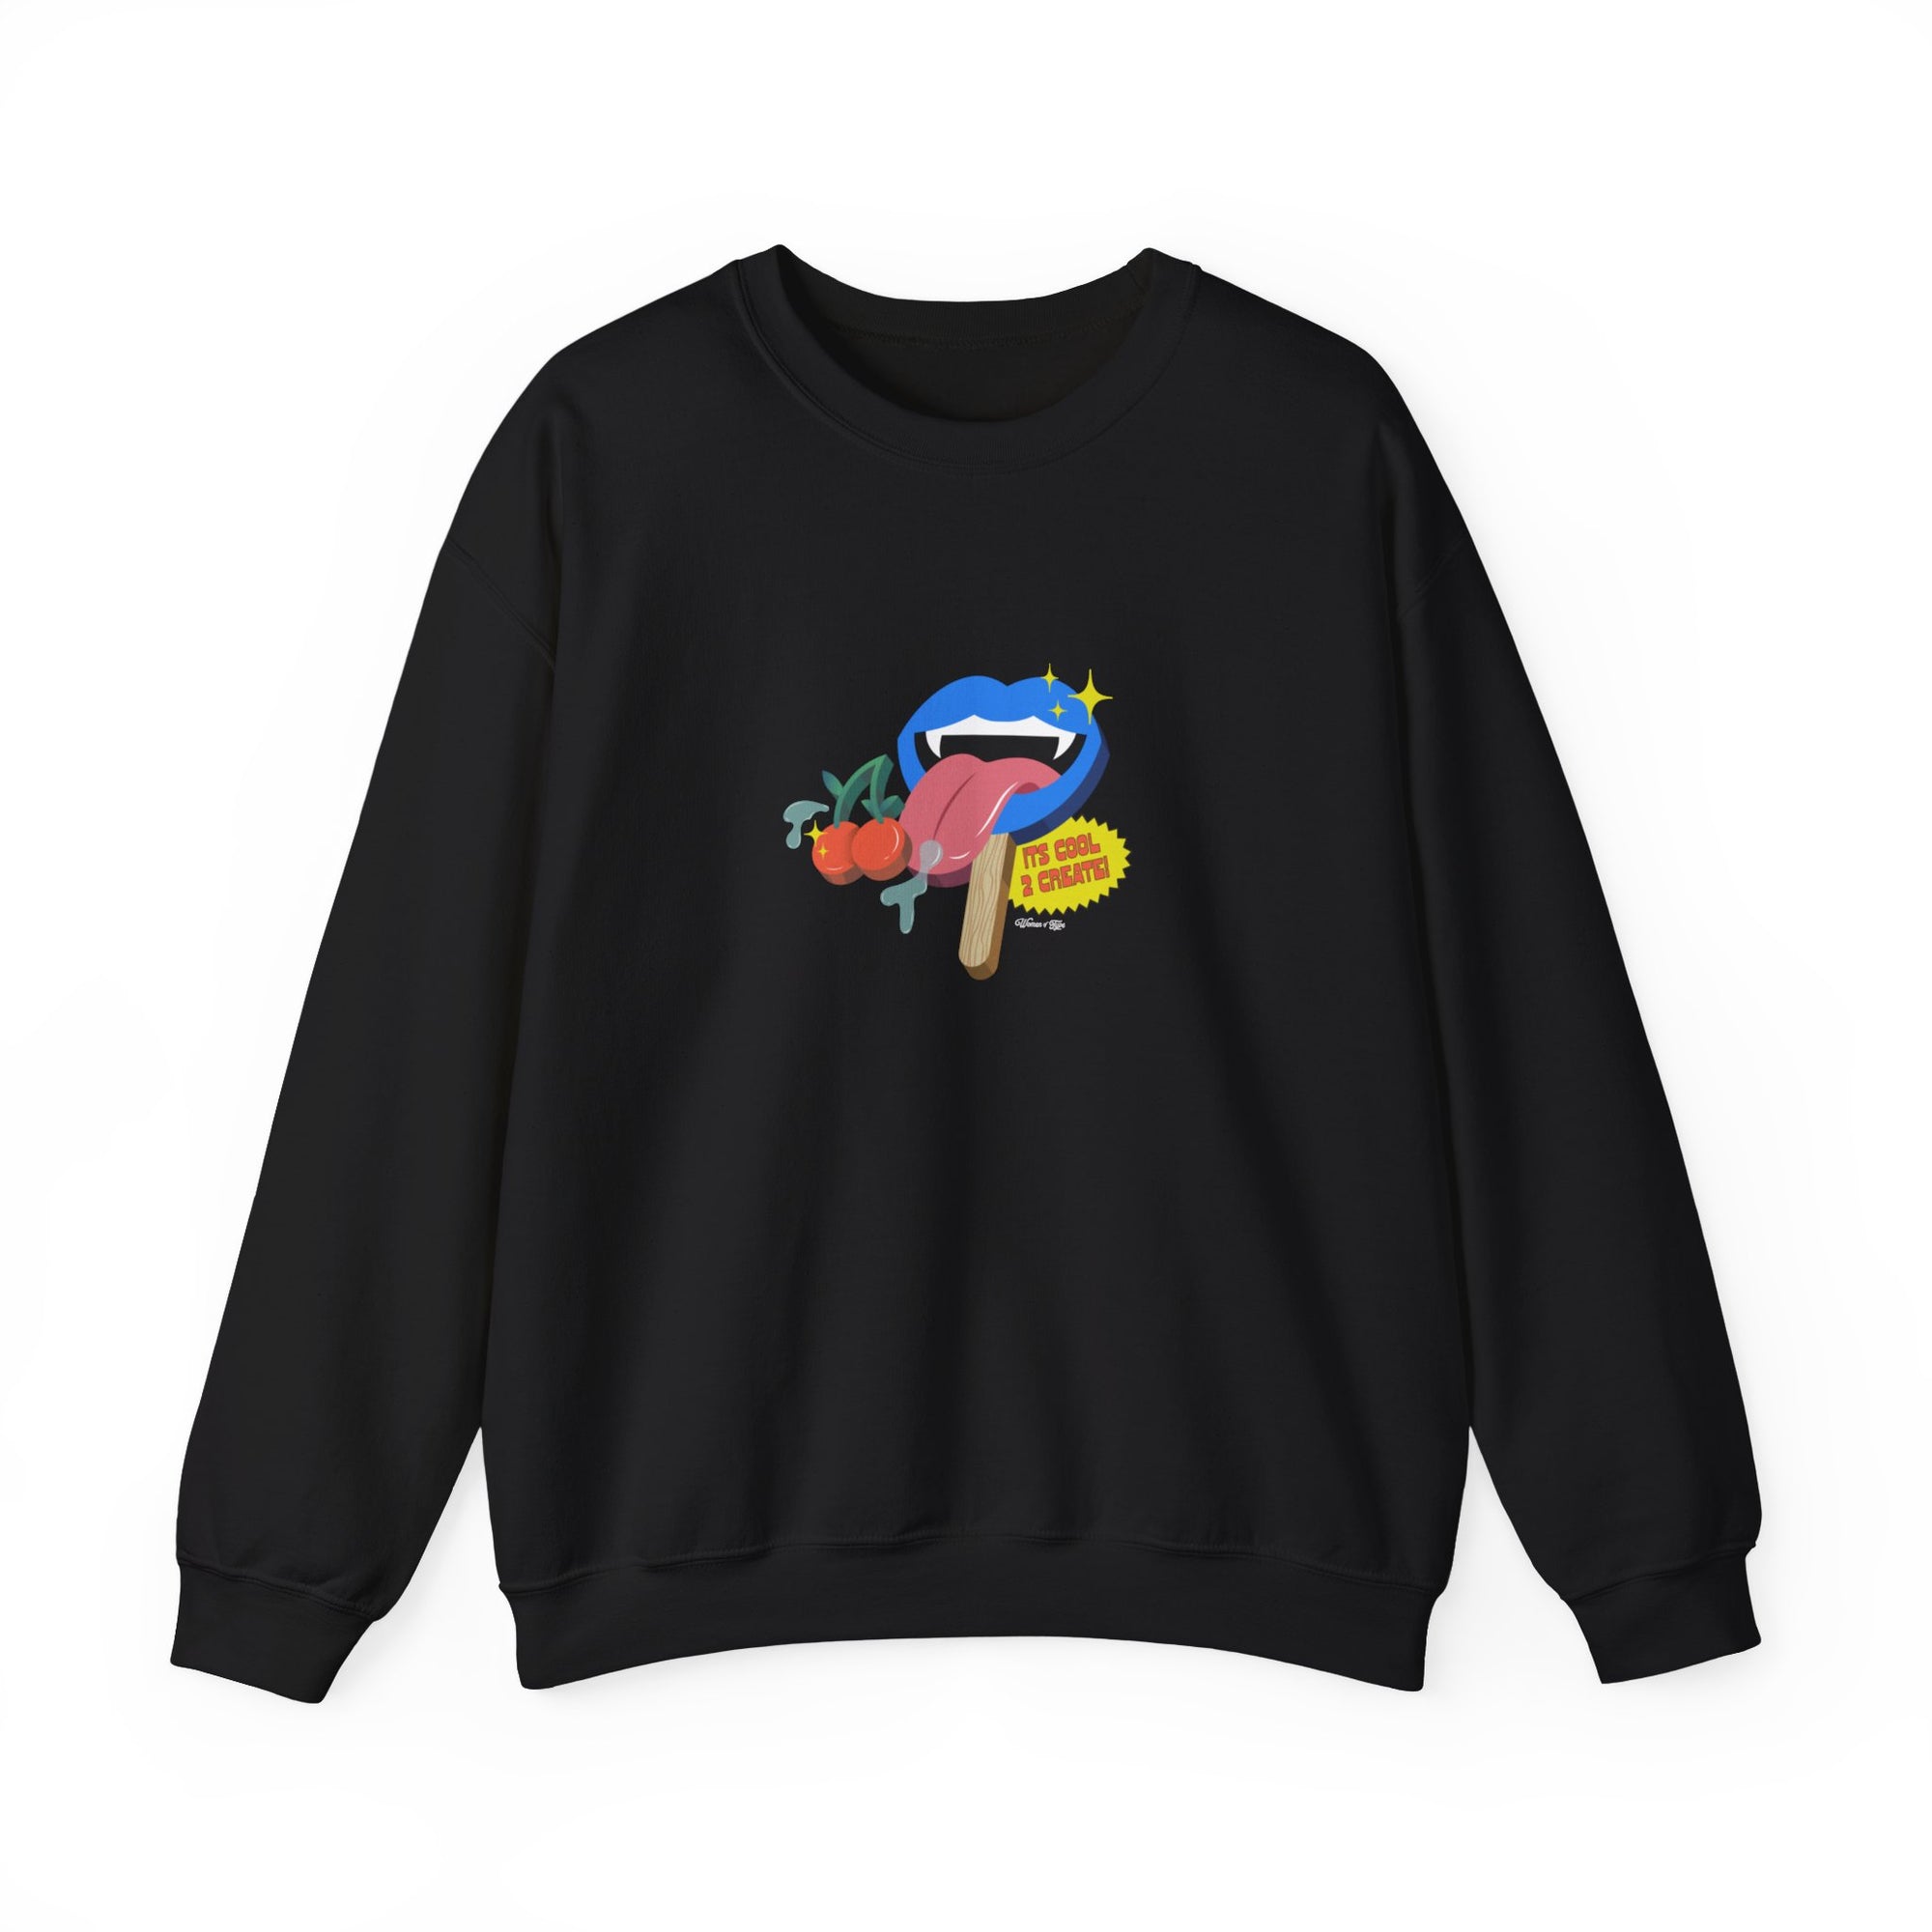 Cool 2 Create Crewneck Sweatshirt Black Unisex